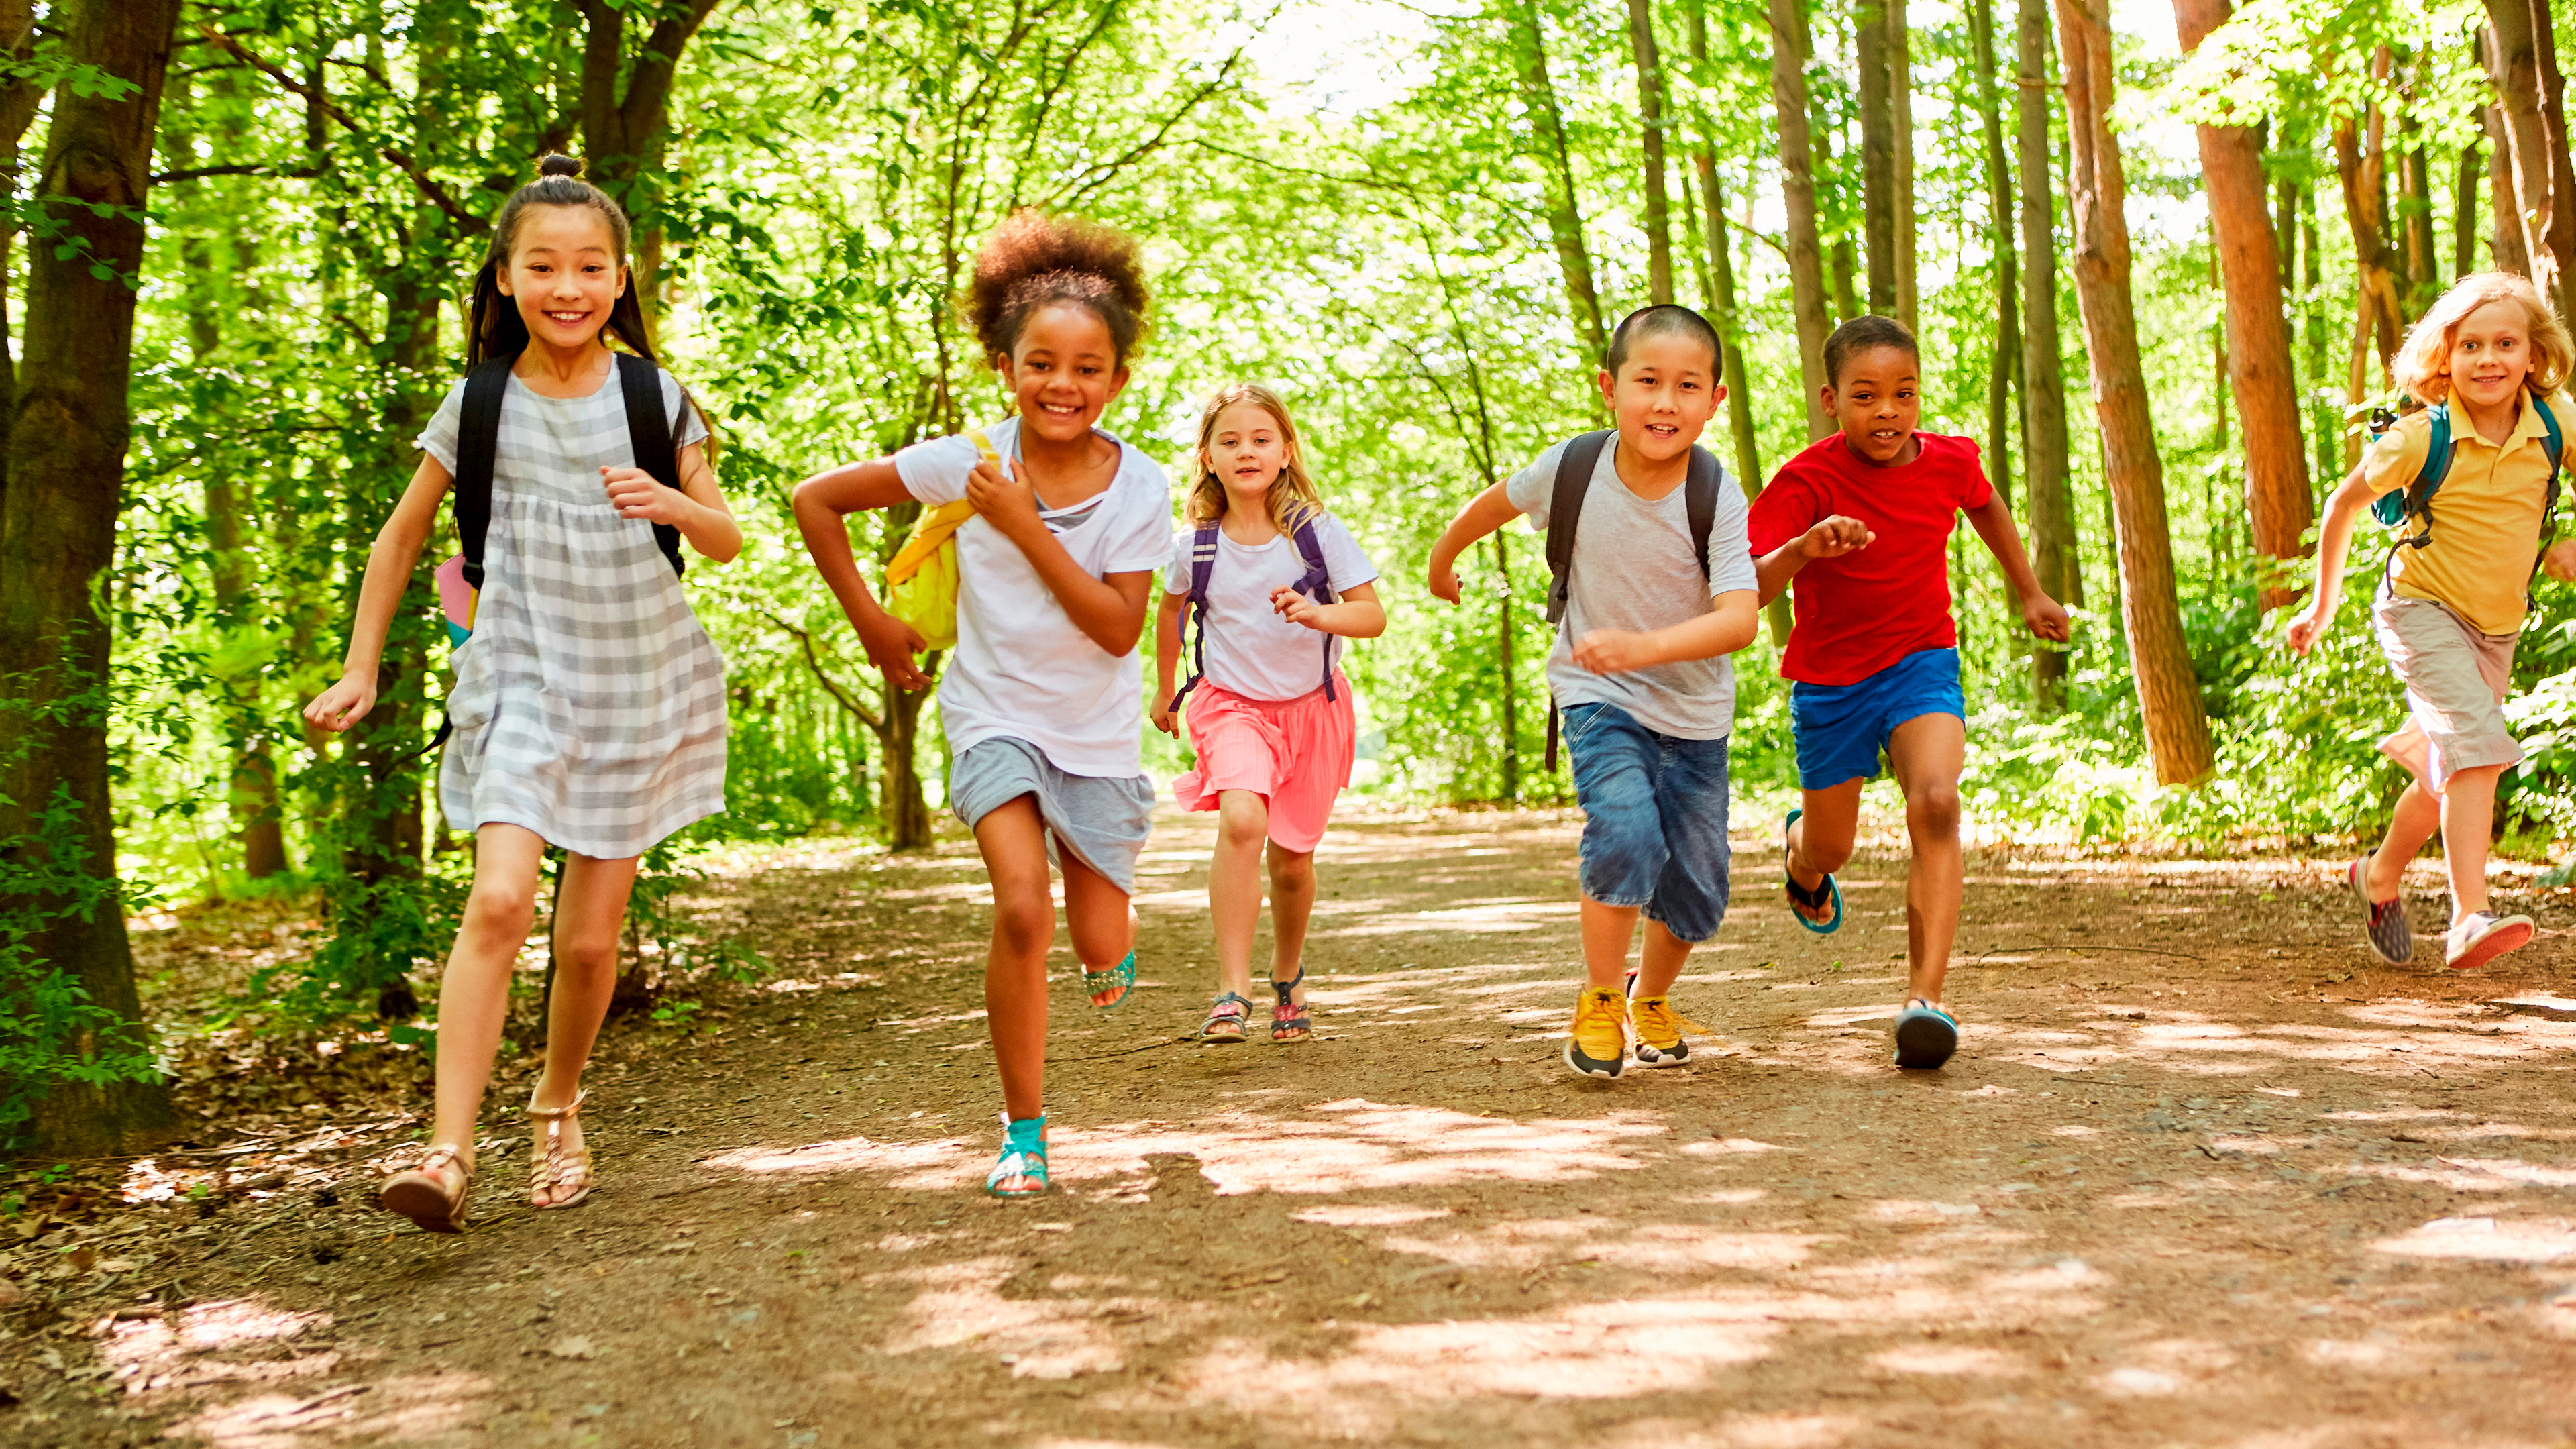 Sechs Kinder rennen sommerlich gekleidet mit Rucksäcken im Wald